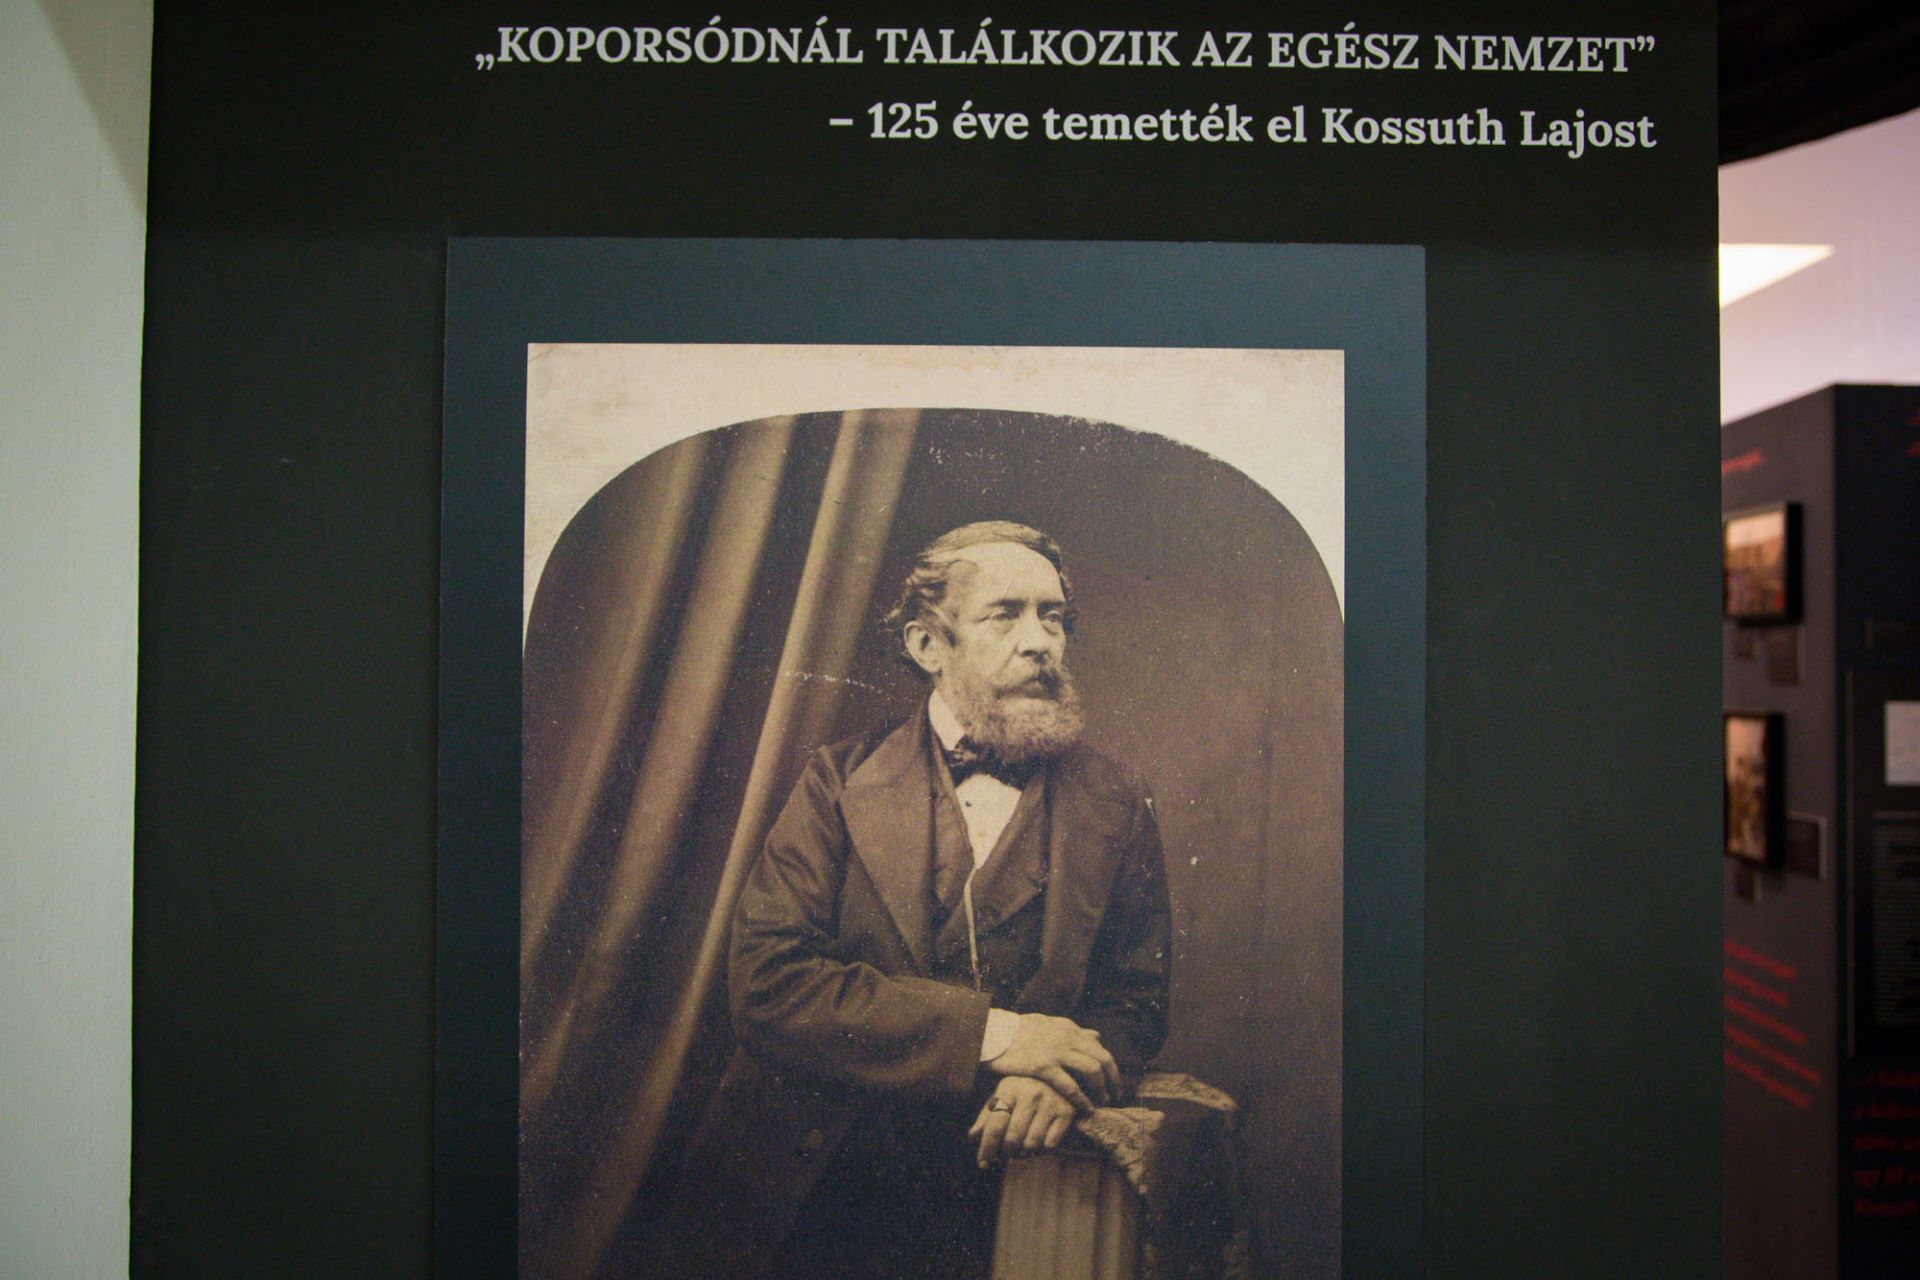 Kiállítás nyílt Kossuth temetésének 125. évfordulójára